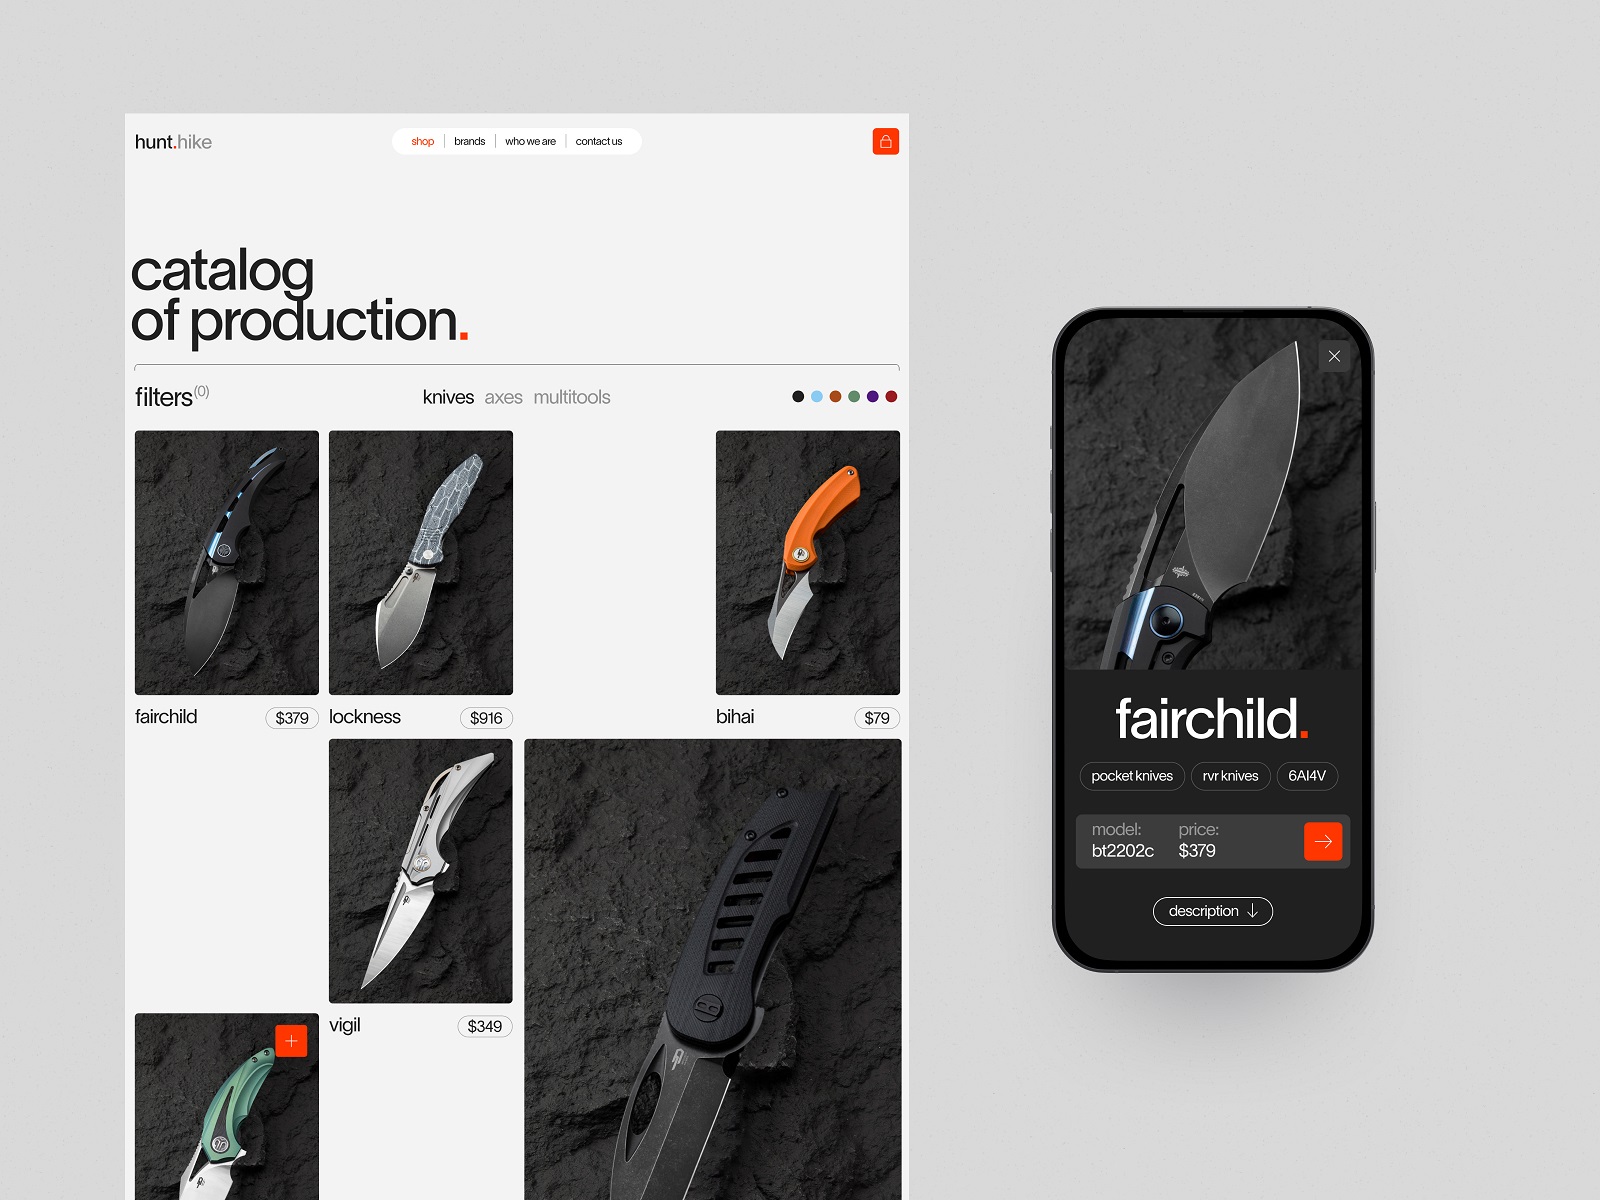 knives producer website tubik design